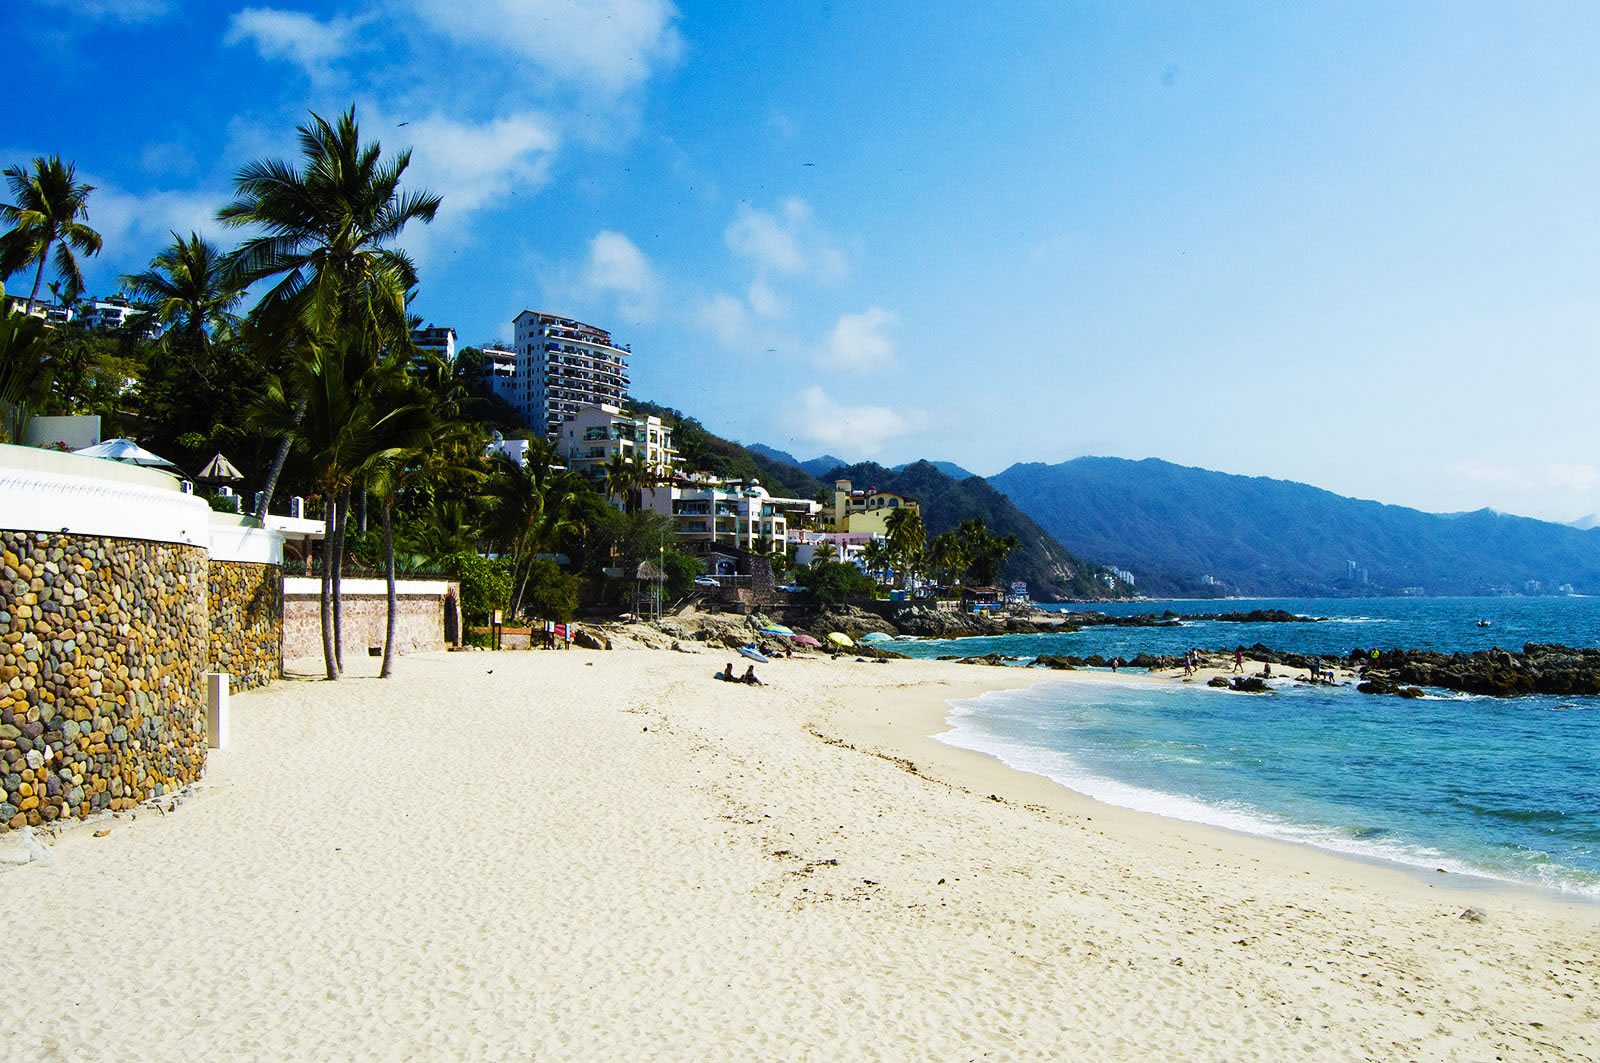 Playas de aguas color esmeralda, de arena suave y oleaje moderado, ideales para visitar con la familia en Puerto Vallarta